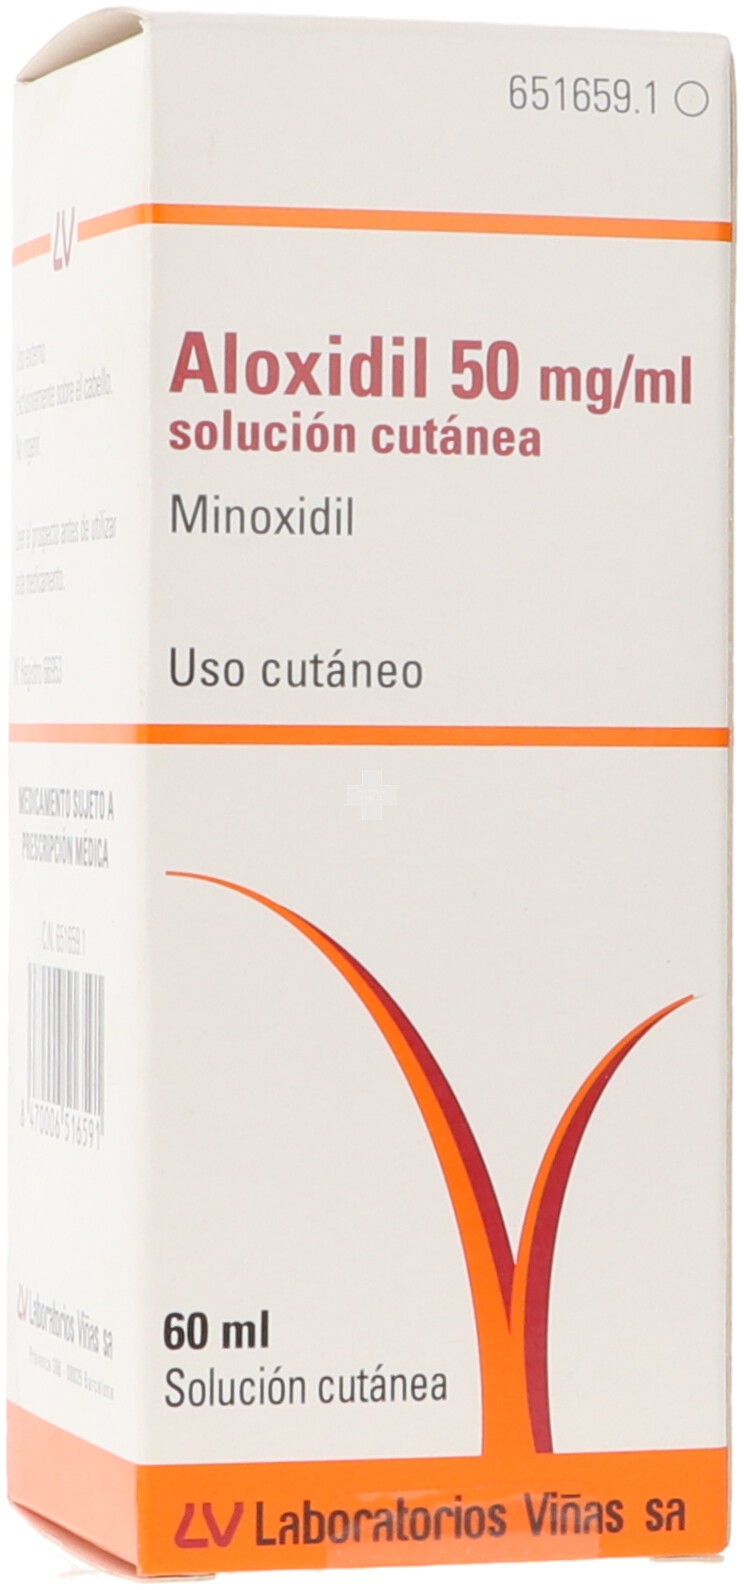 Aloxidil 50 mg /ml Solución Cutánea - 1 Frasco De 60 ml